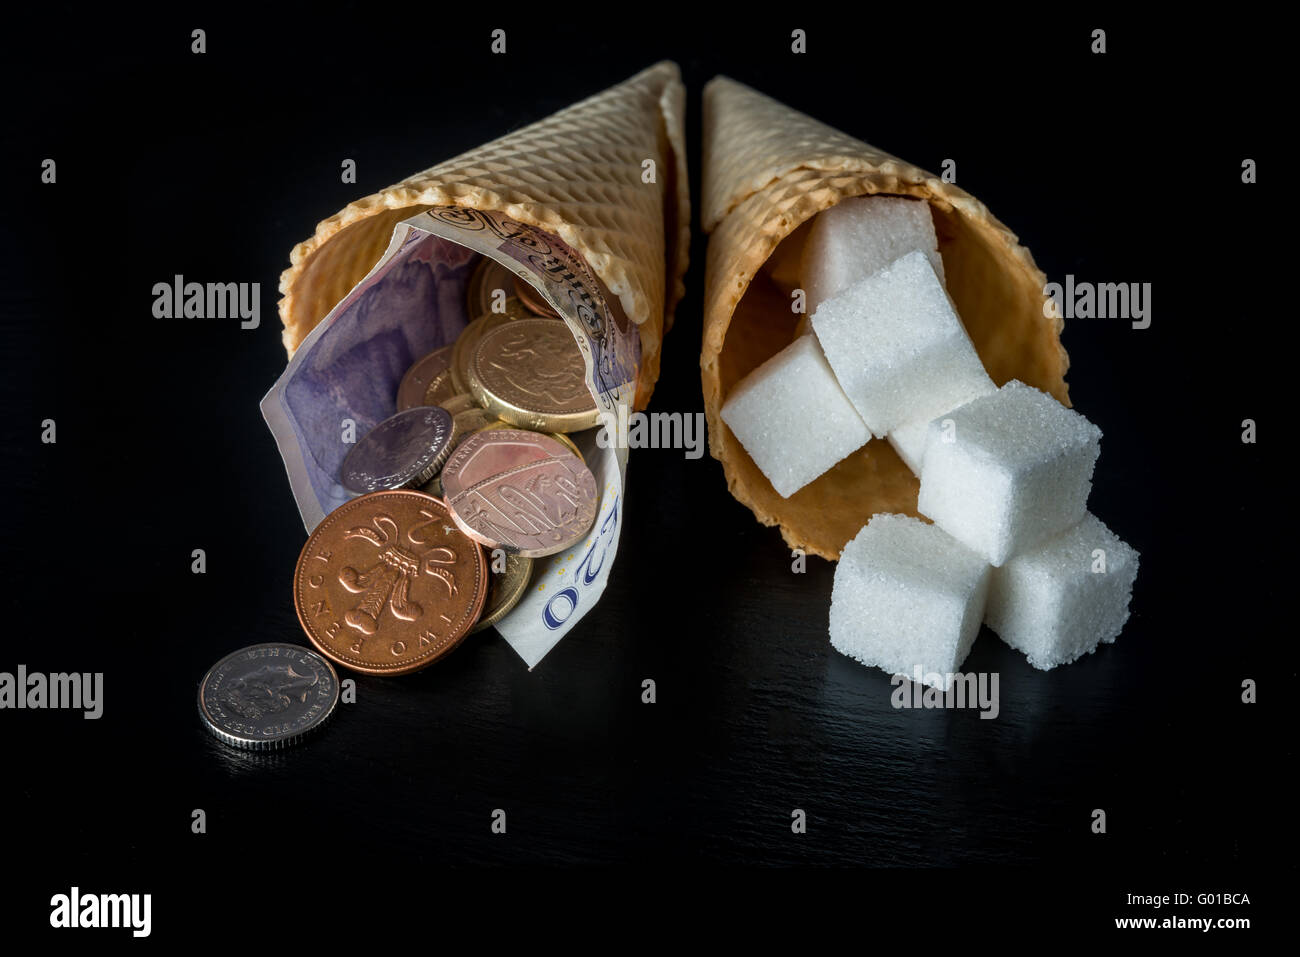 Coni con cubetti di zucchero in uno e denaro (pound note e pence monete) simboleggia la tassa di zucchero nel Regno Unito Foto Stock